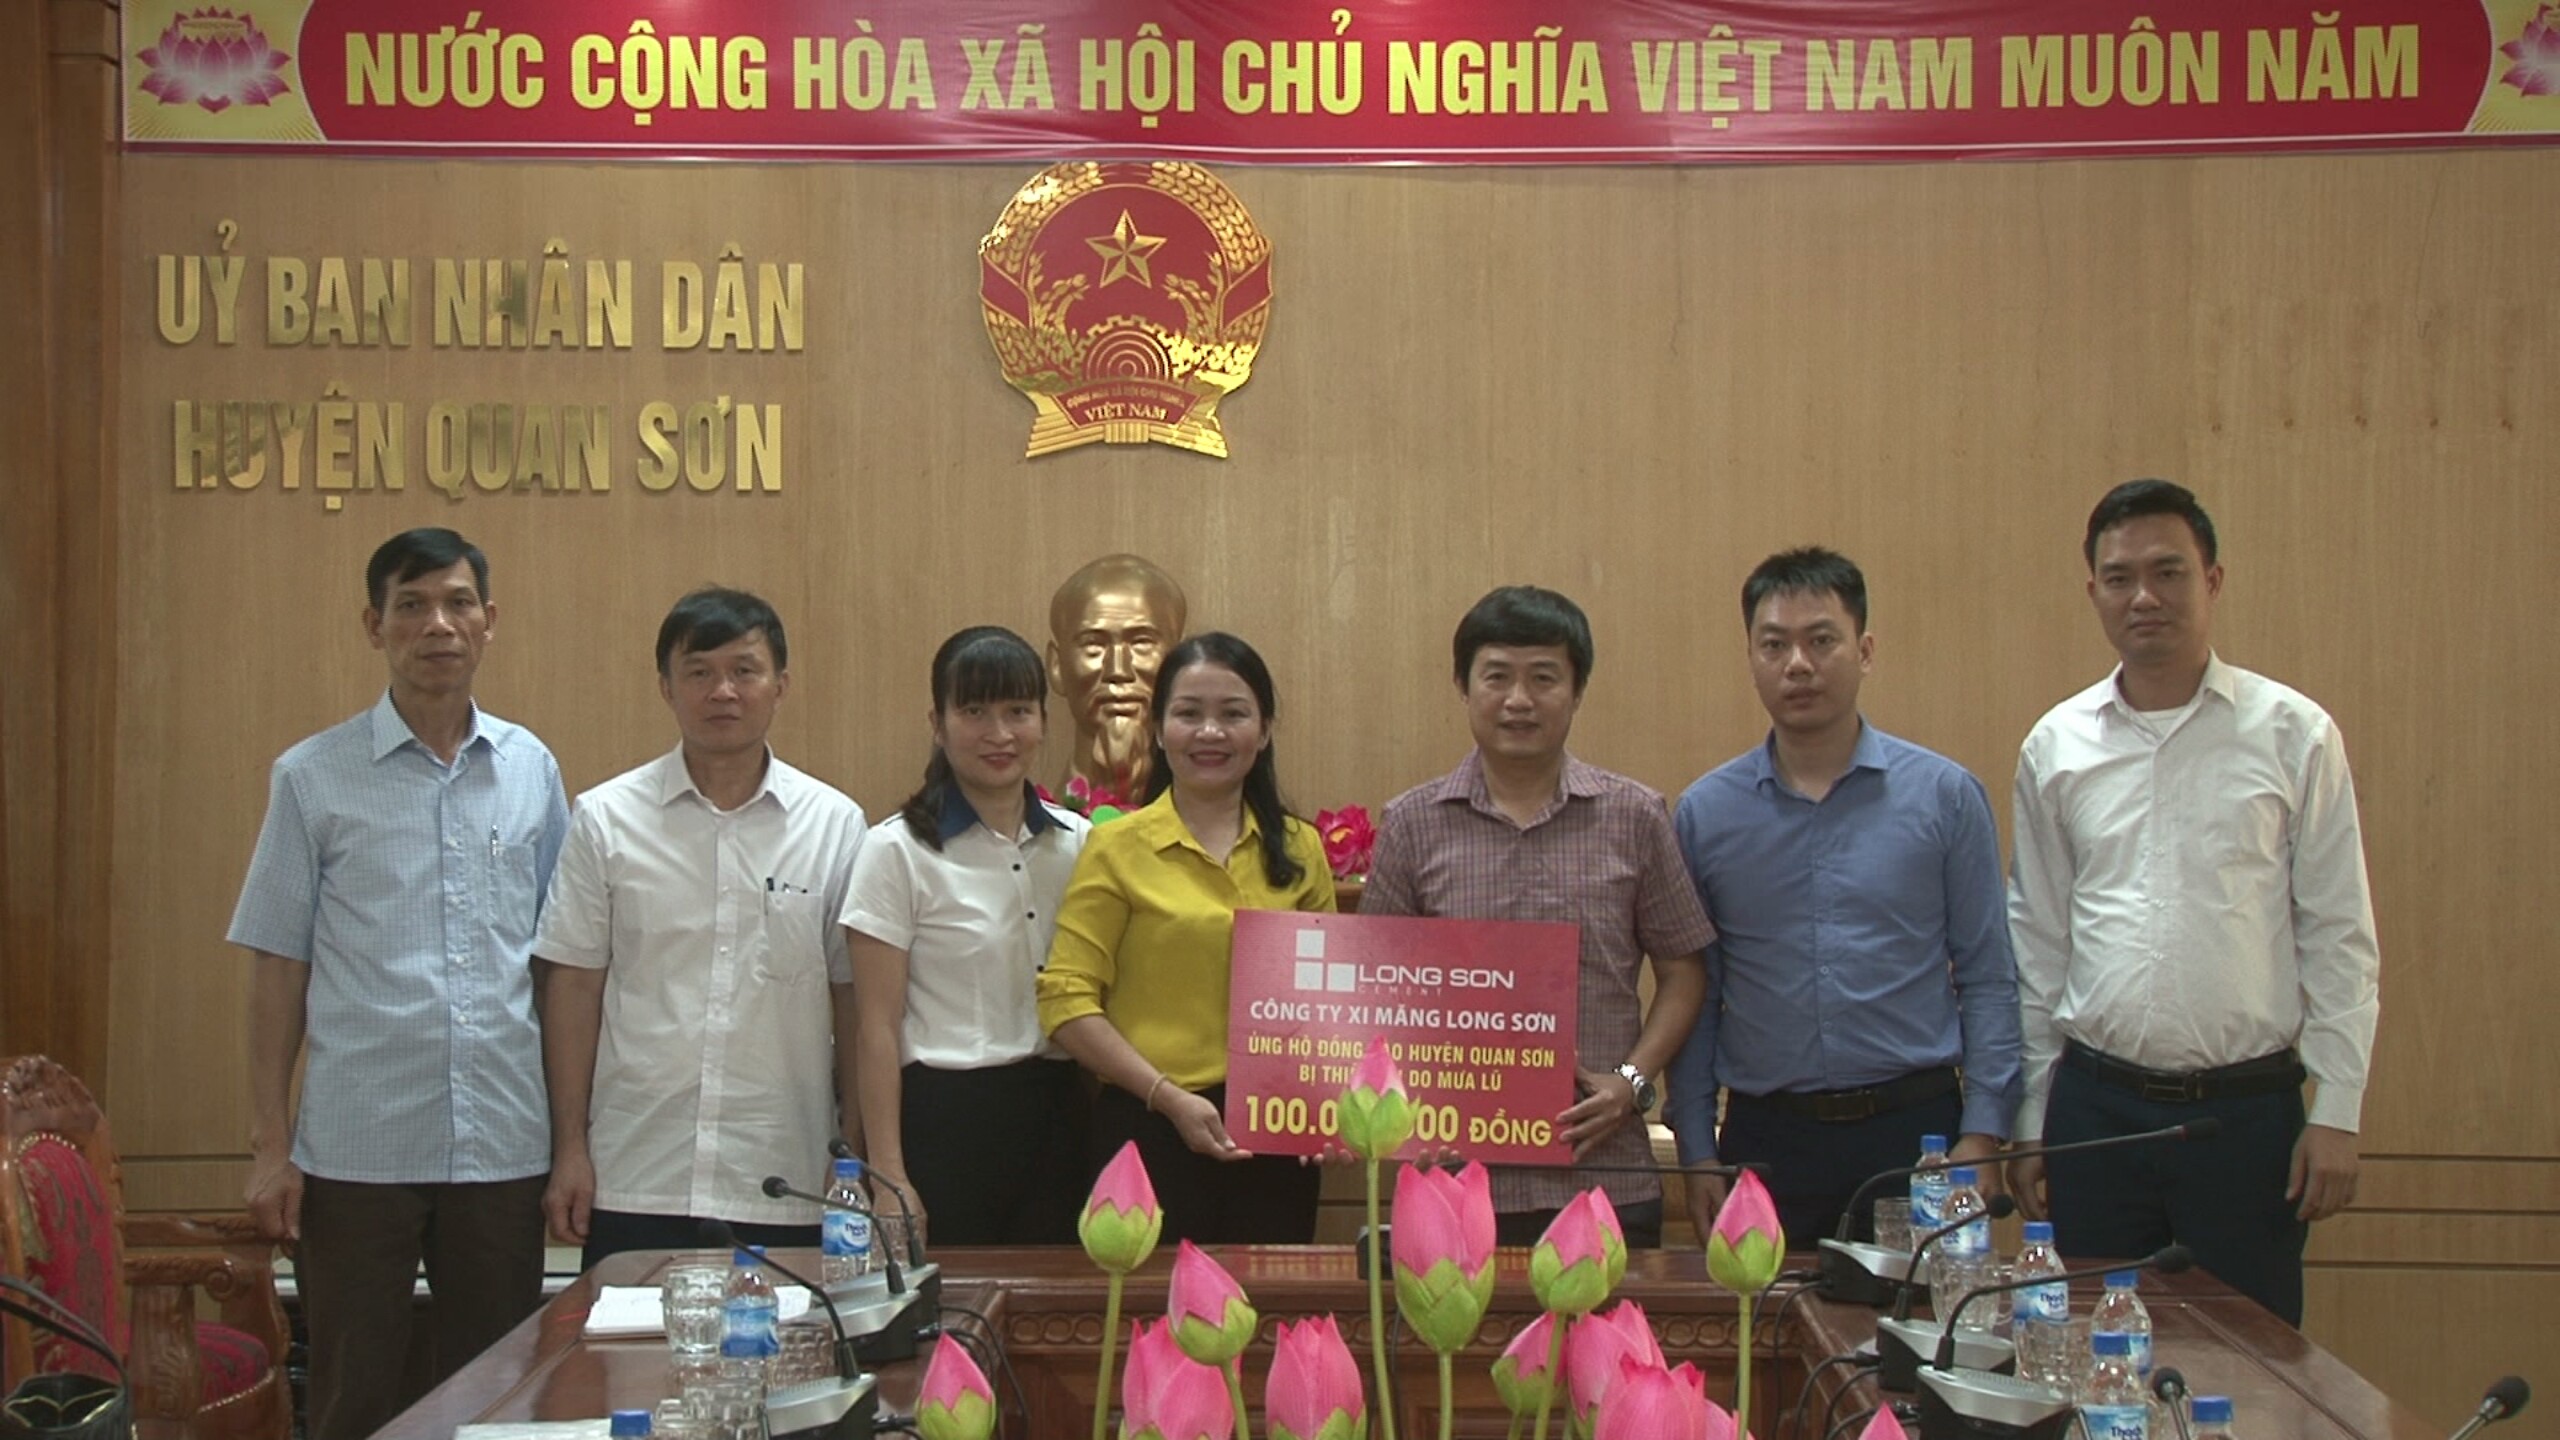 Công ty Xi măng Long Sơn – ủng hộ đồng bào huyện Quan Sơn, Mường Lát bị thiệt hại do mưa lũ.